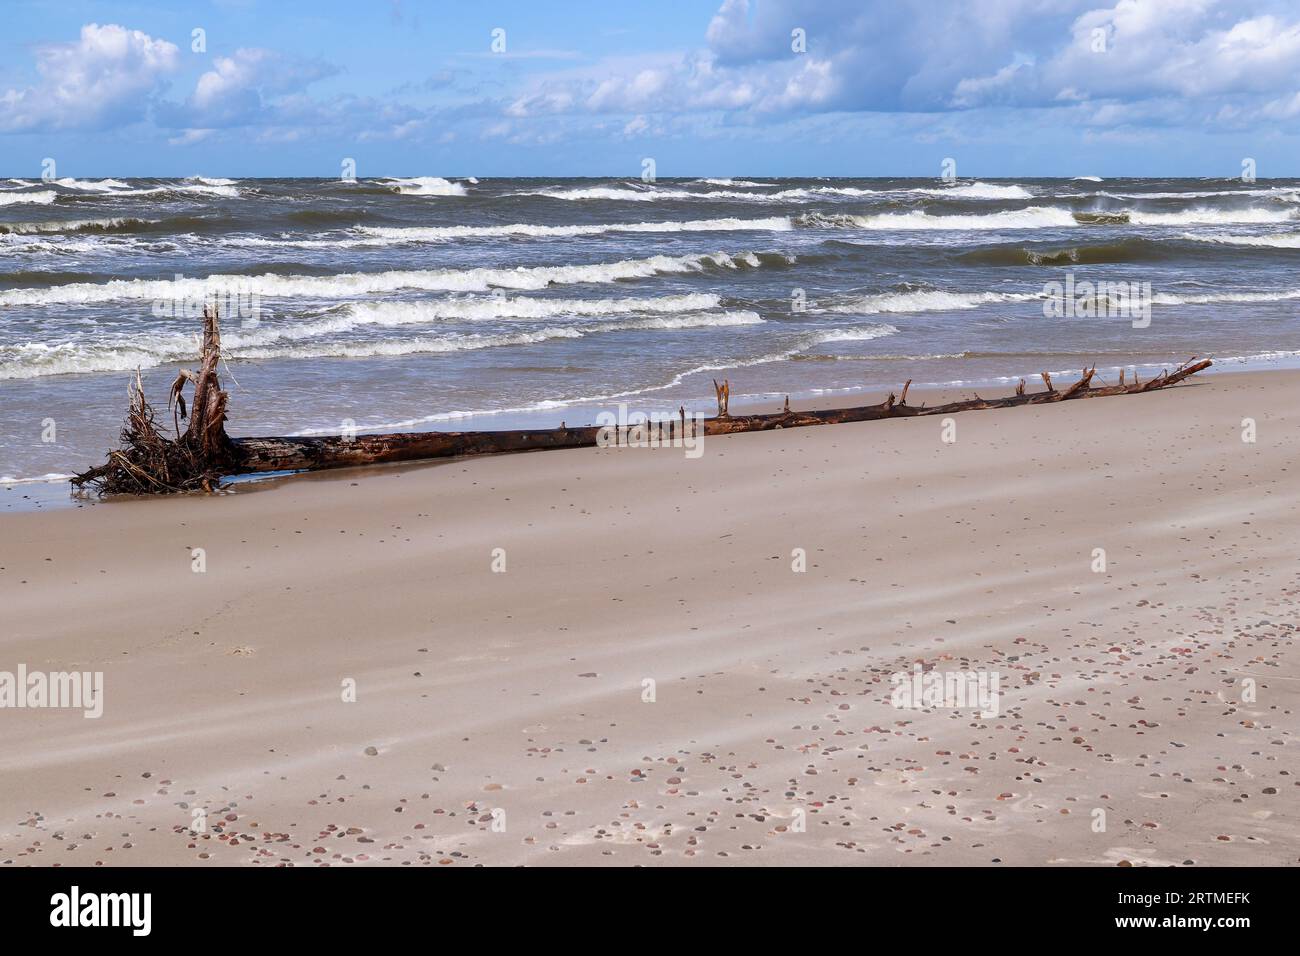 Costa del Mar Baltico e spiaggia selvaggia accanto alle dune mobili del Parco Nazionale Slovacco, conosciuto anche come Parco Nazionale Slowinski, Polonia Foto Stock